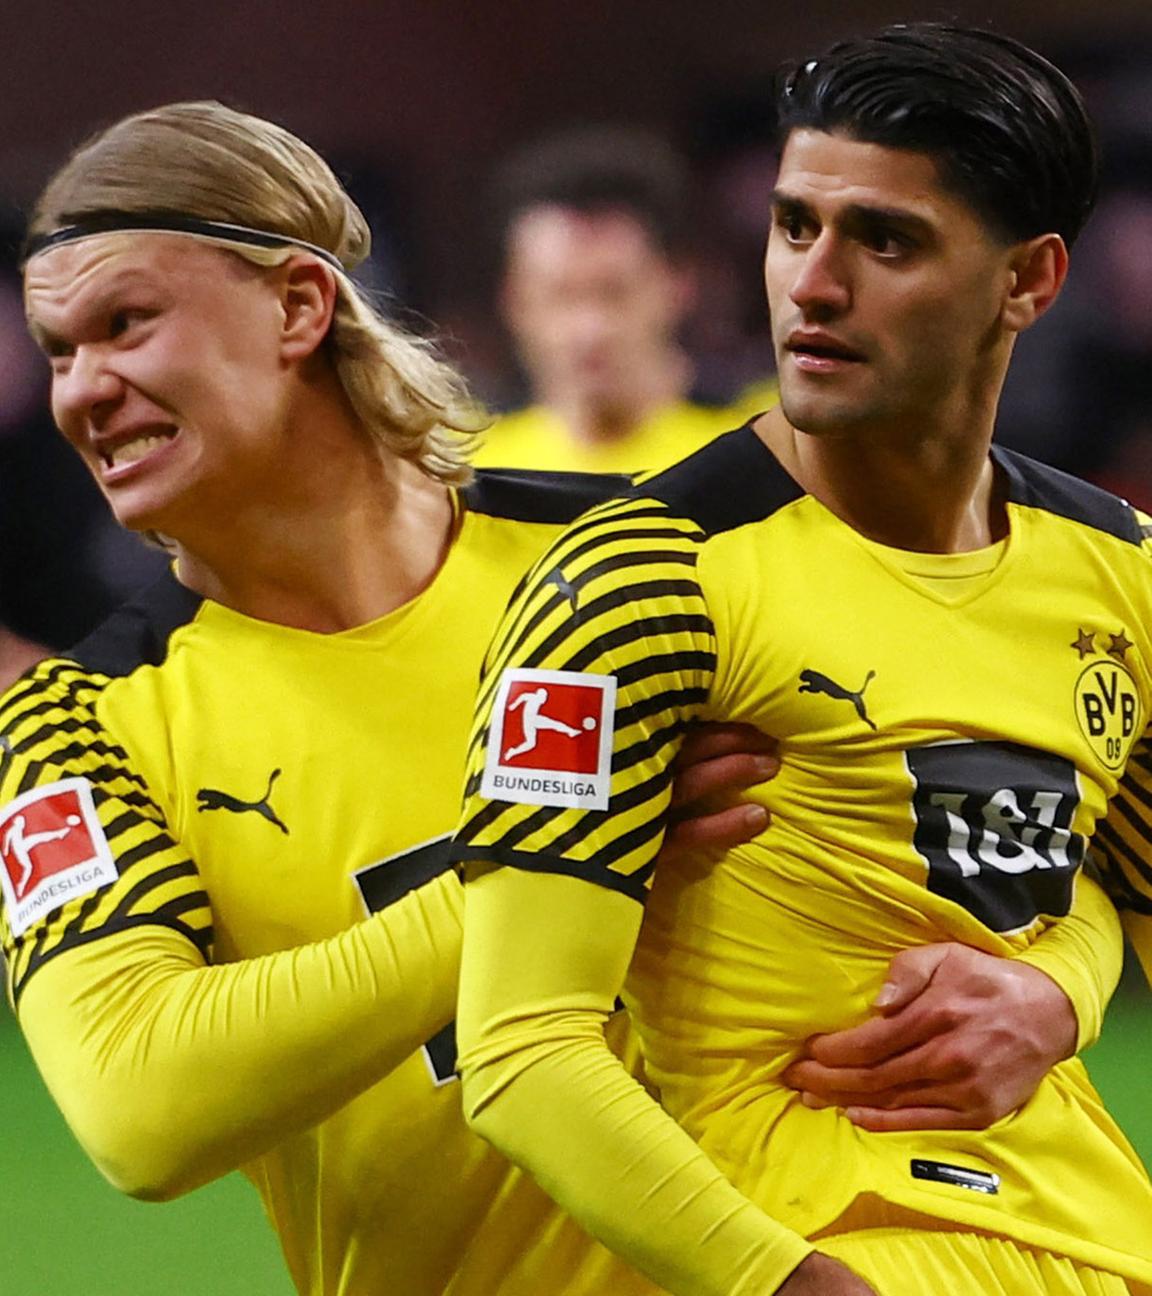 8. Januar 2022 Mahmoud Dahoud von Borussia Dortmund feiert mit Erling Braut Haaland sein drittes Tor, während Filip Kostic von Eintracht Frankfurt niedergeschlagen aussieht